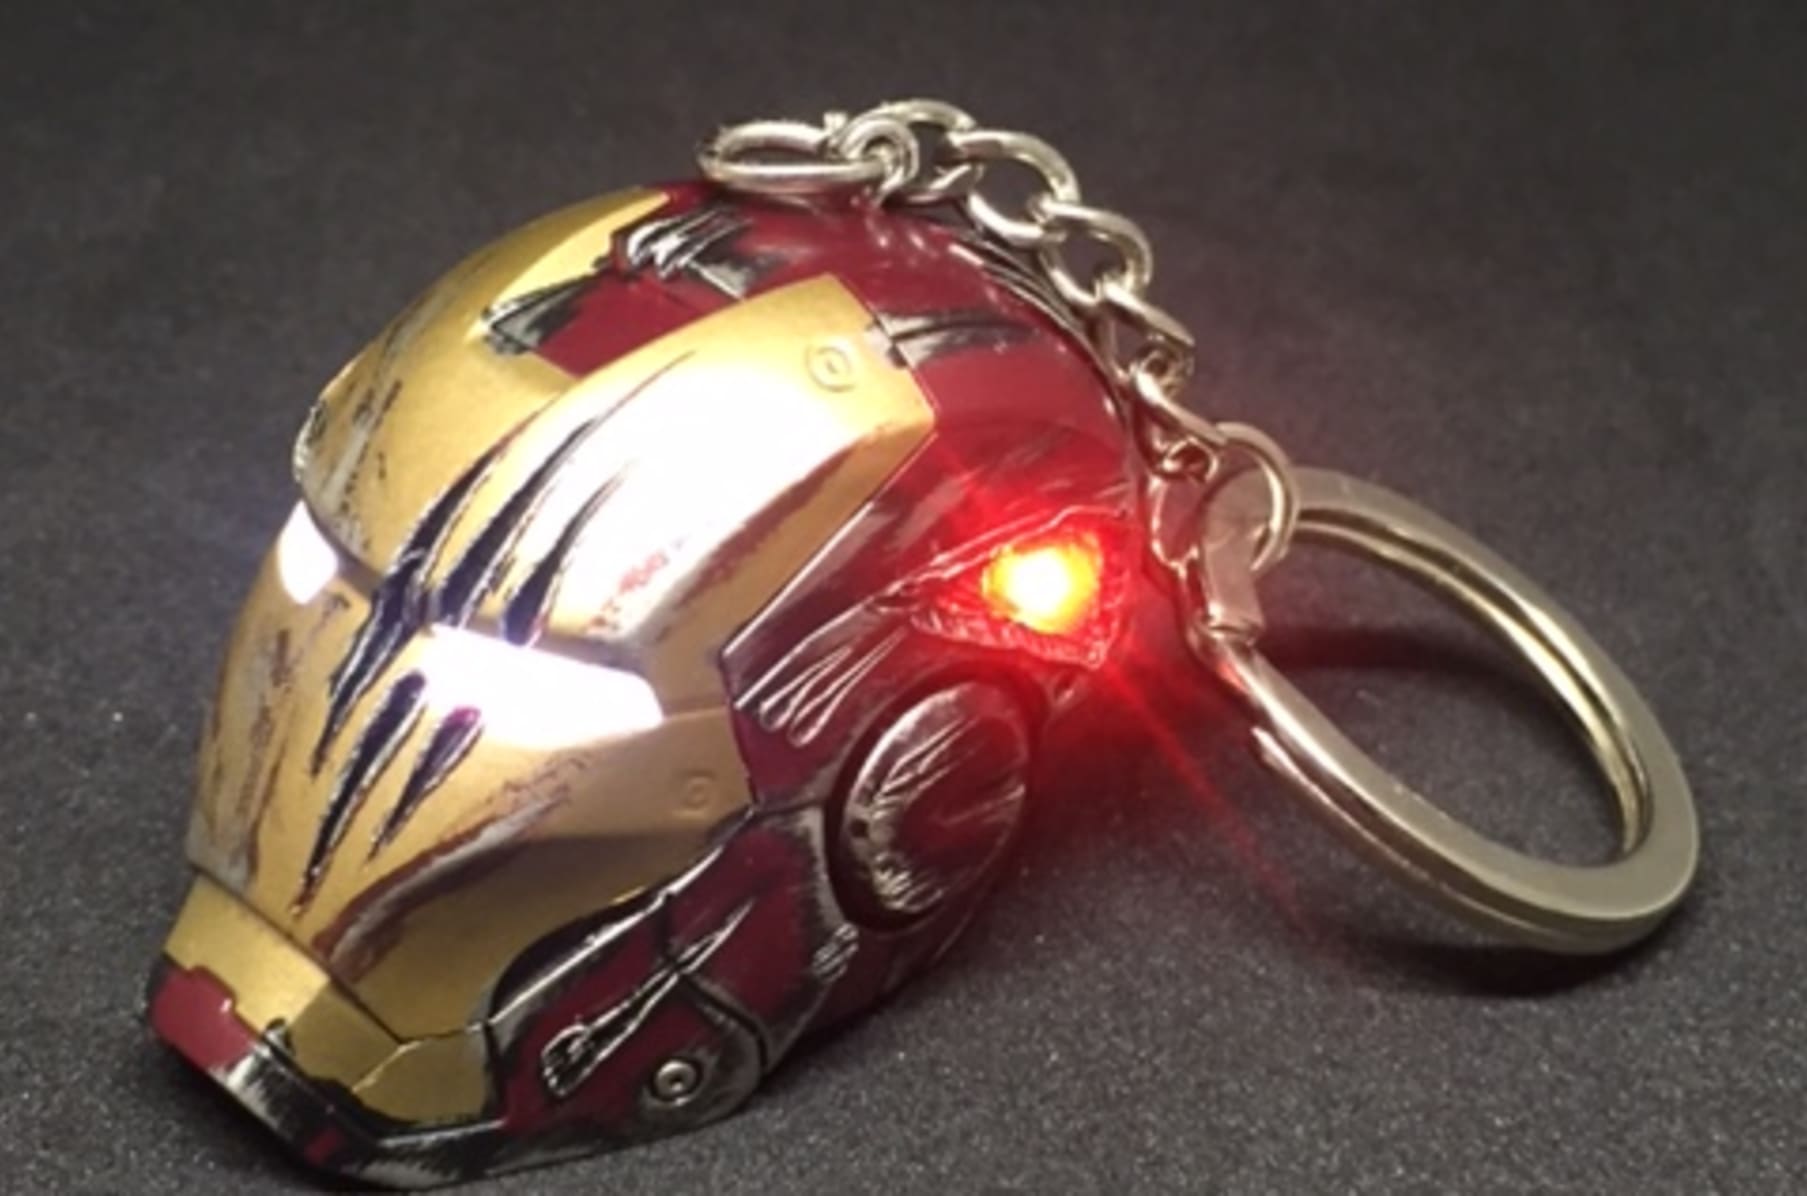 iron man keychain